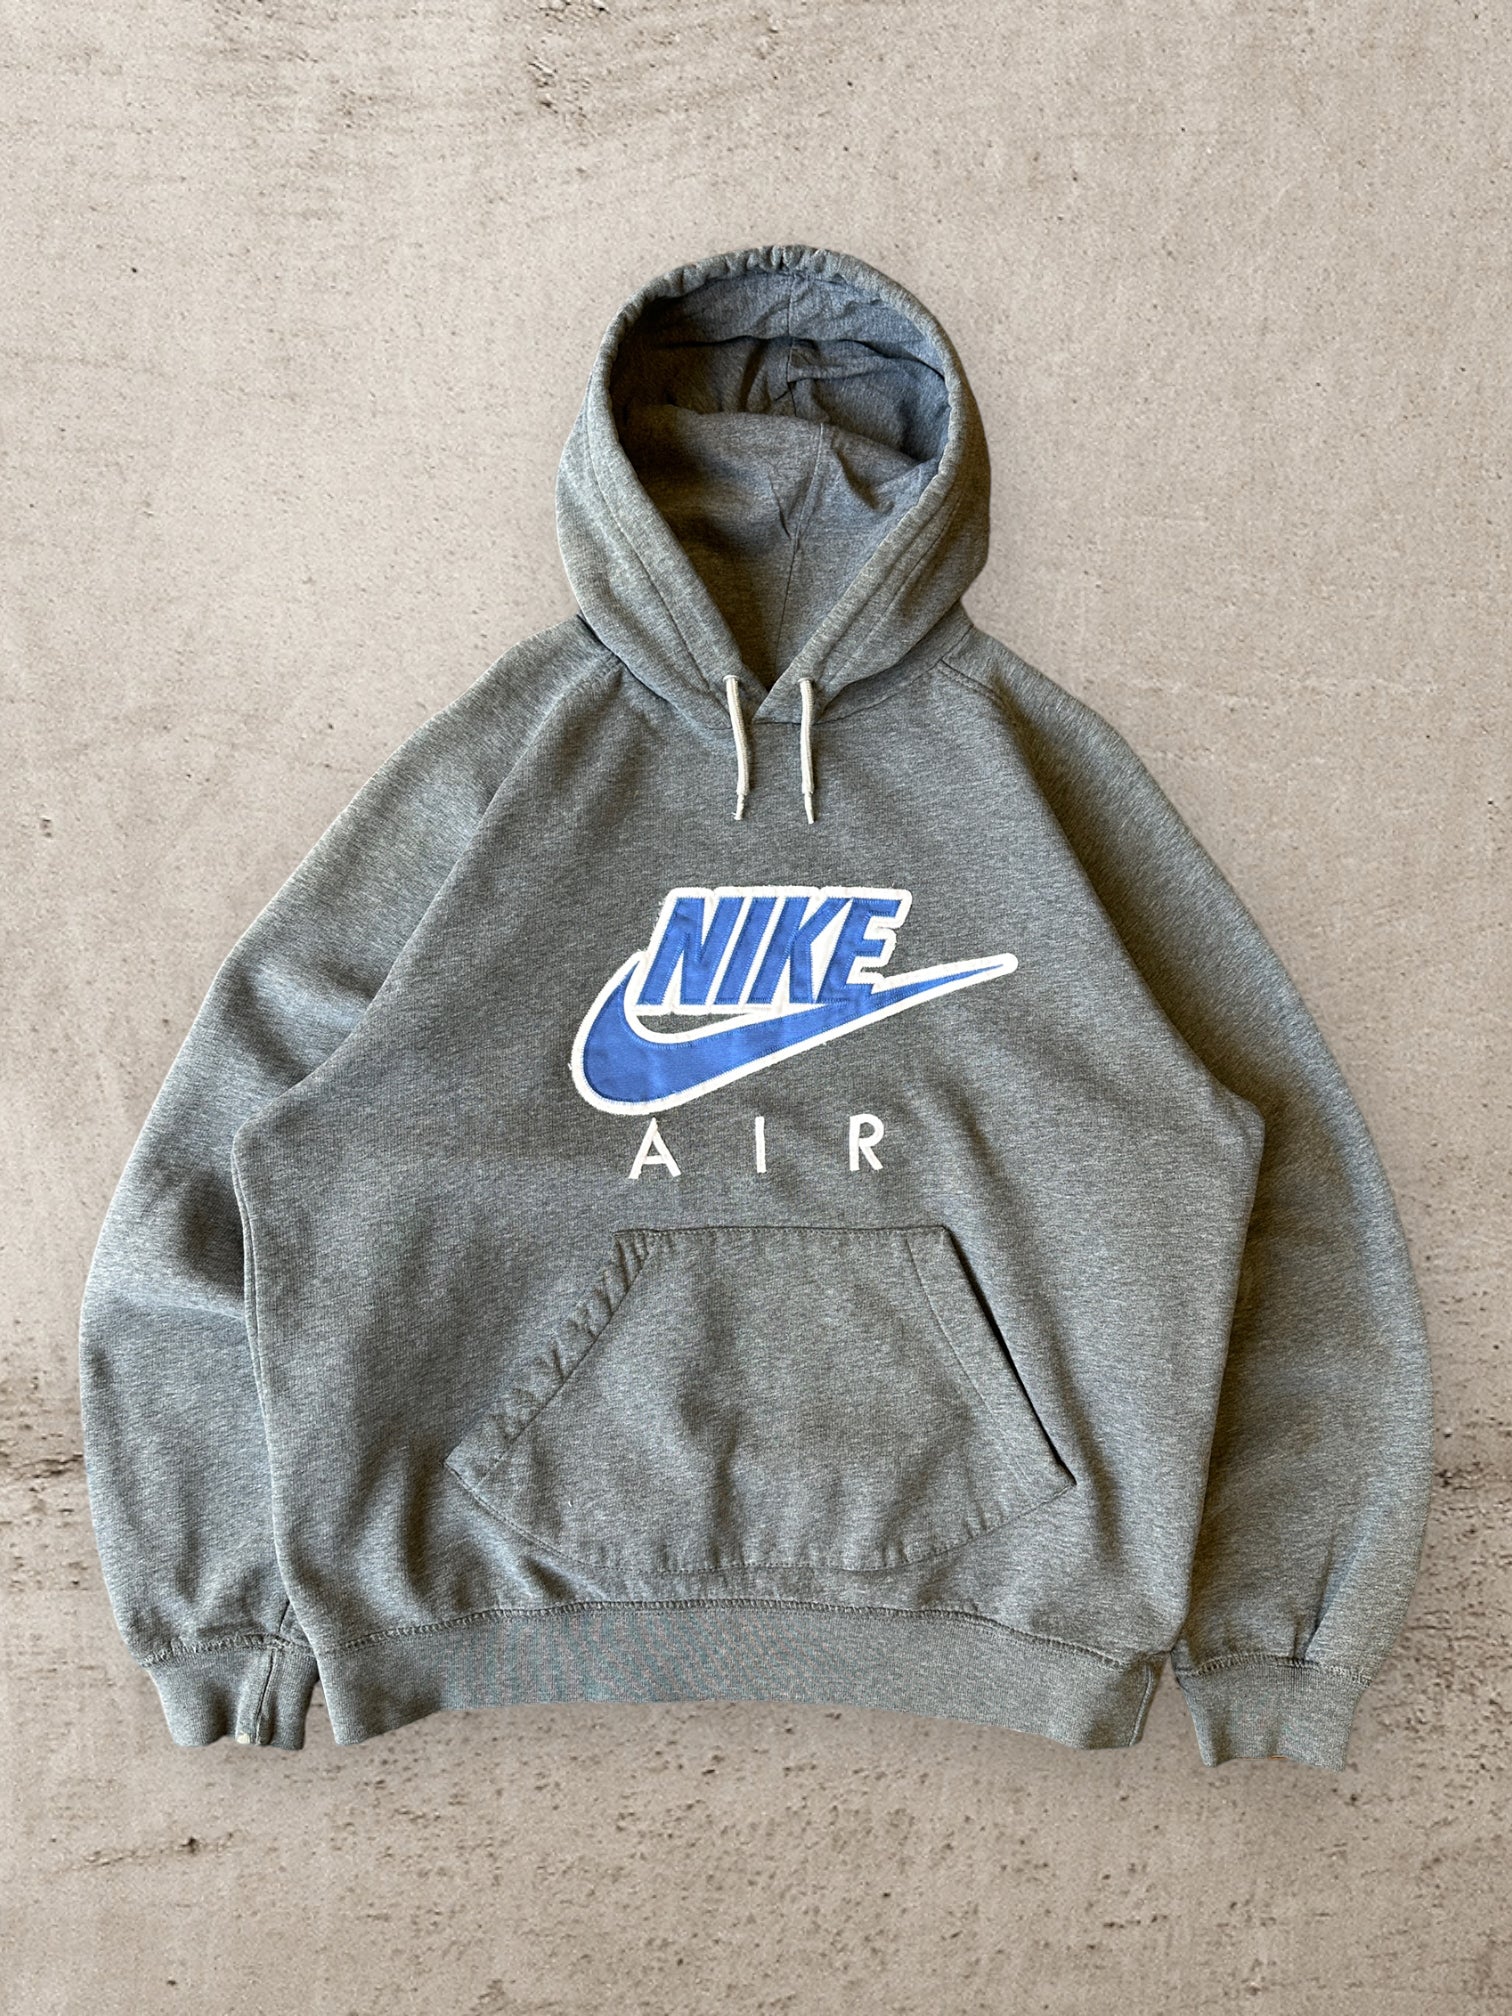 00s Nike Air Embroidered Dark Grey Hoodie - Large